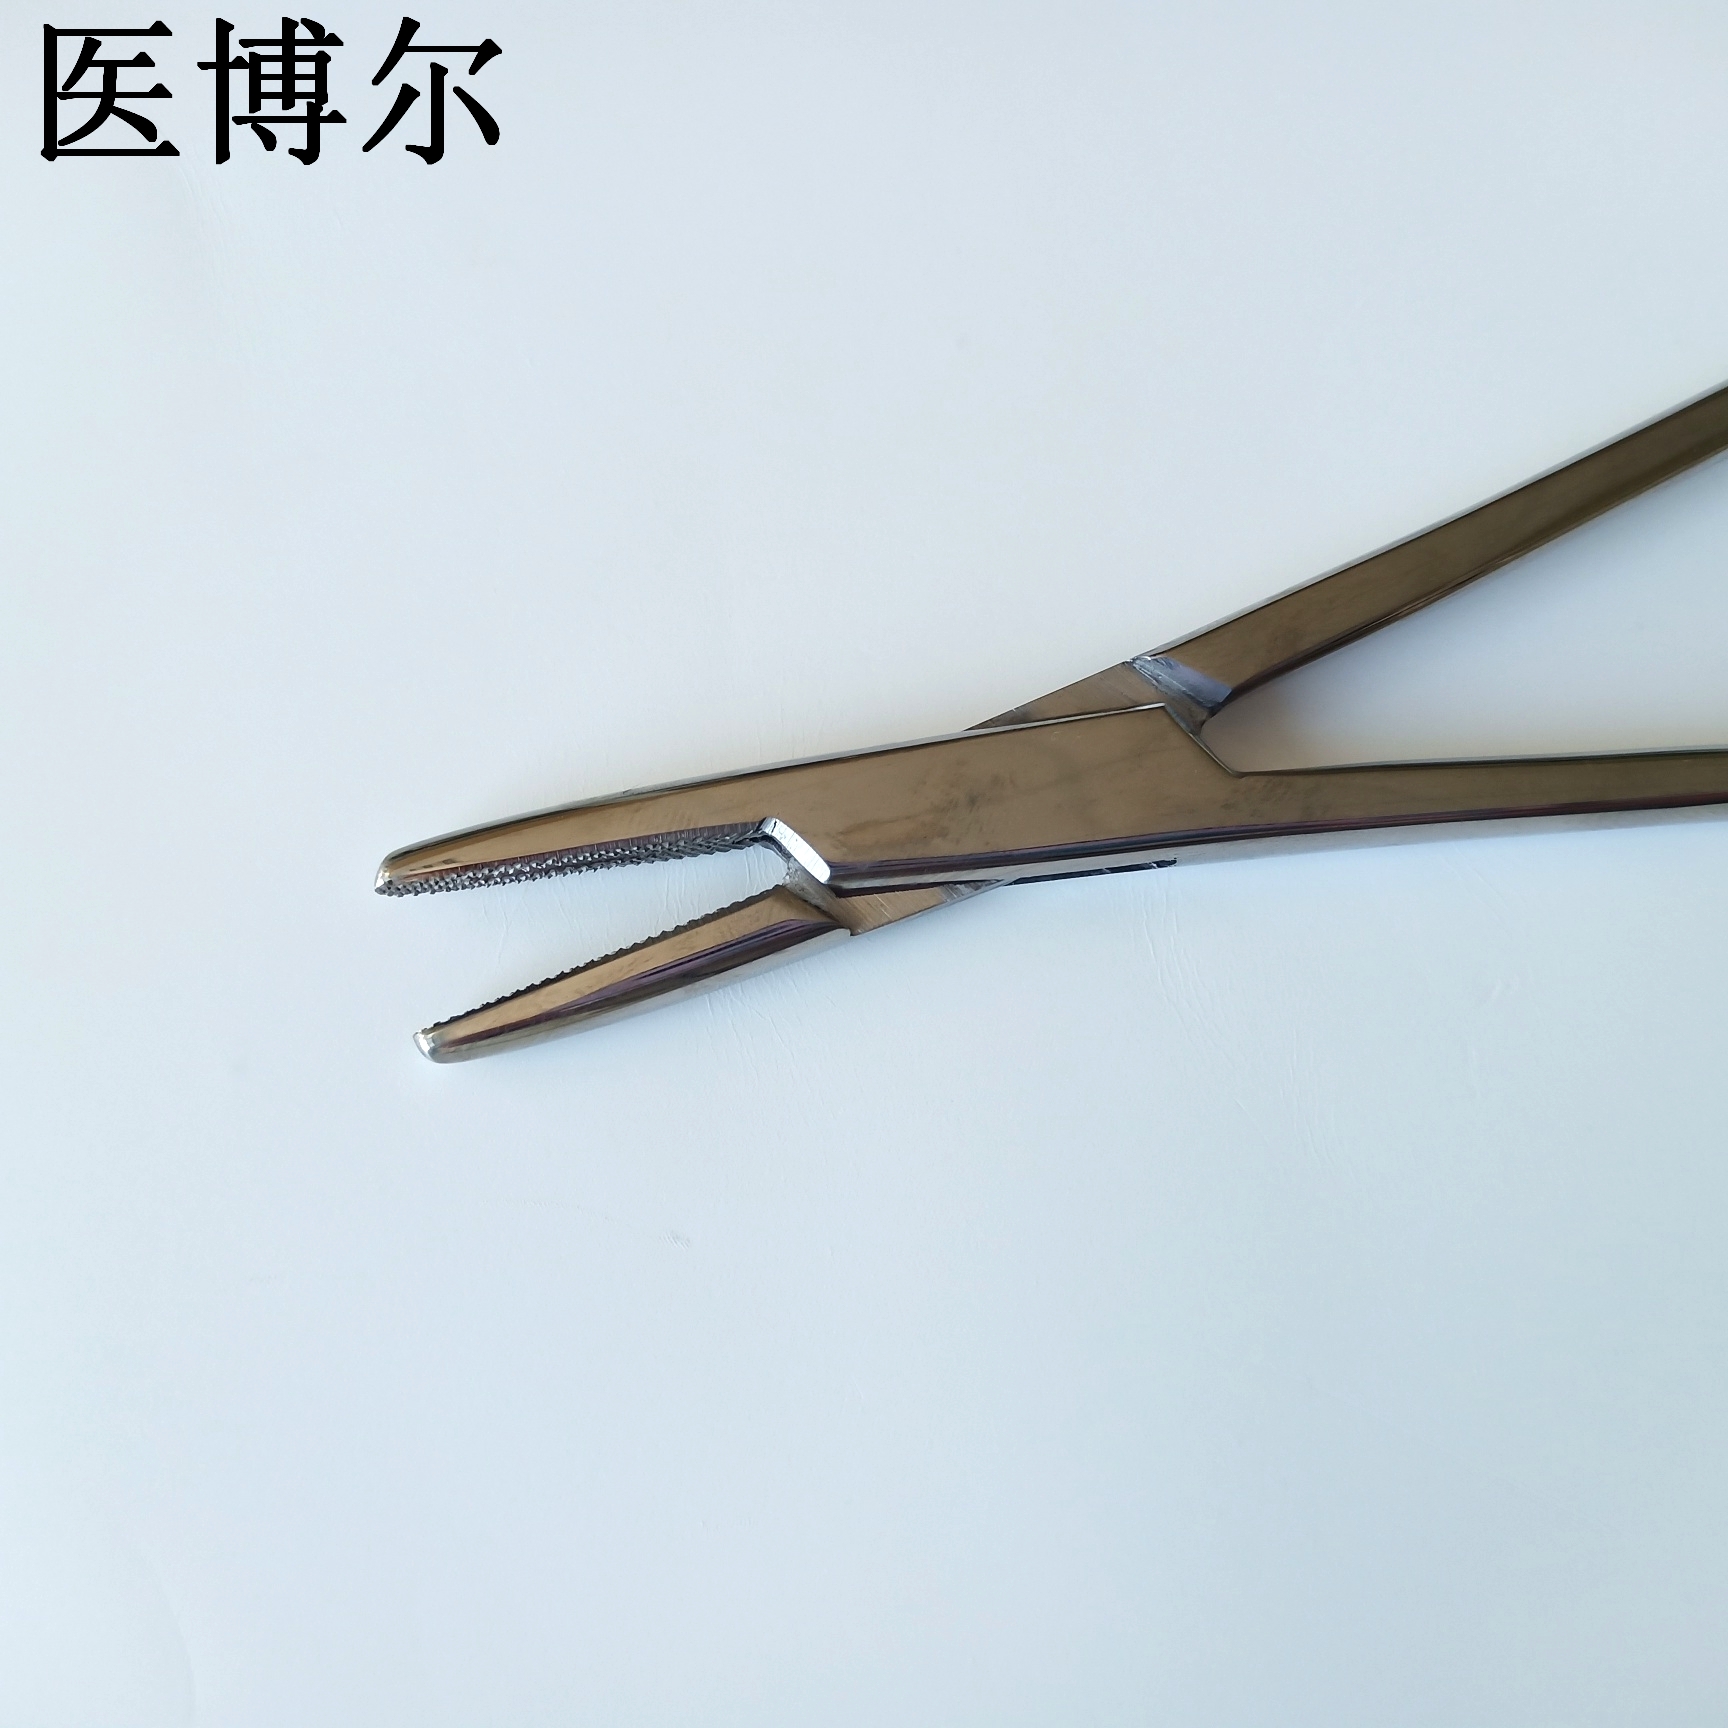 18cm粗针持针器 (6)_看图王.jpg